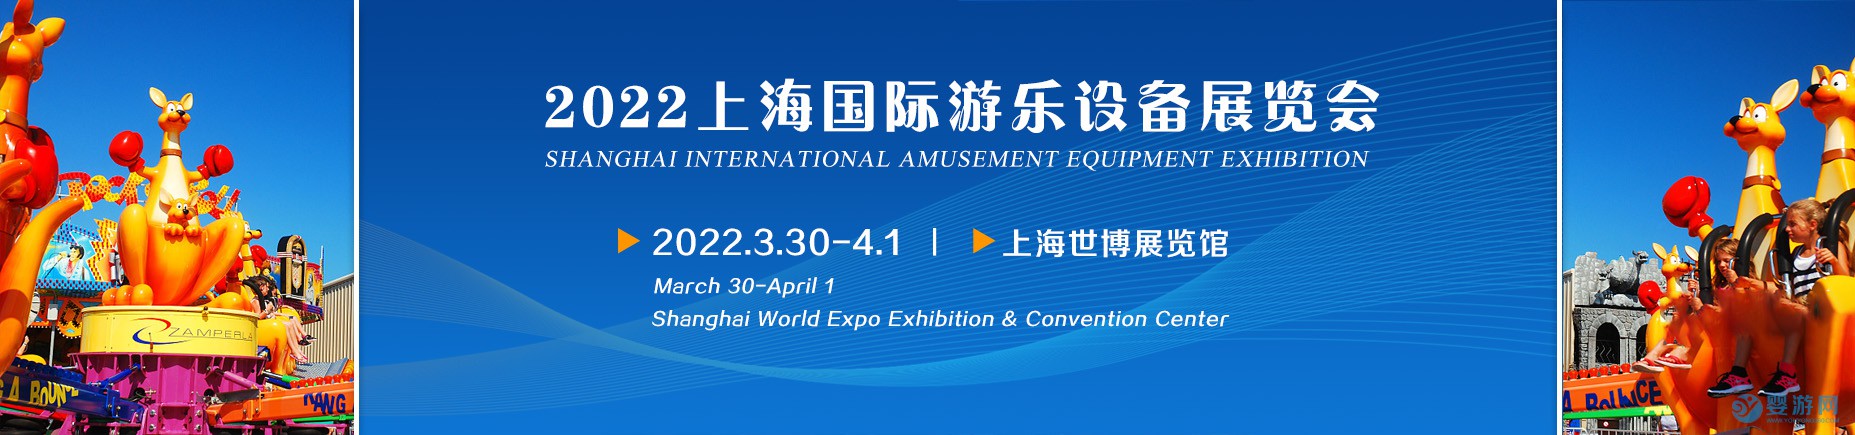 2022年上海国际游乐设备展览会